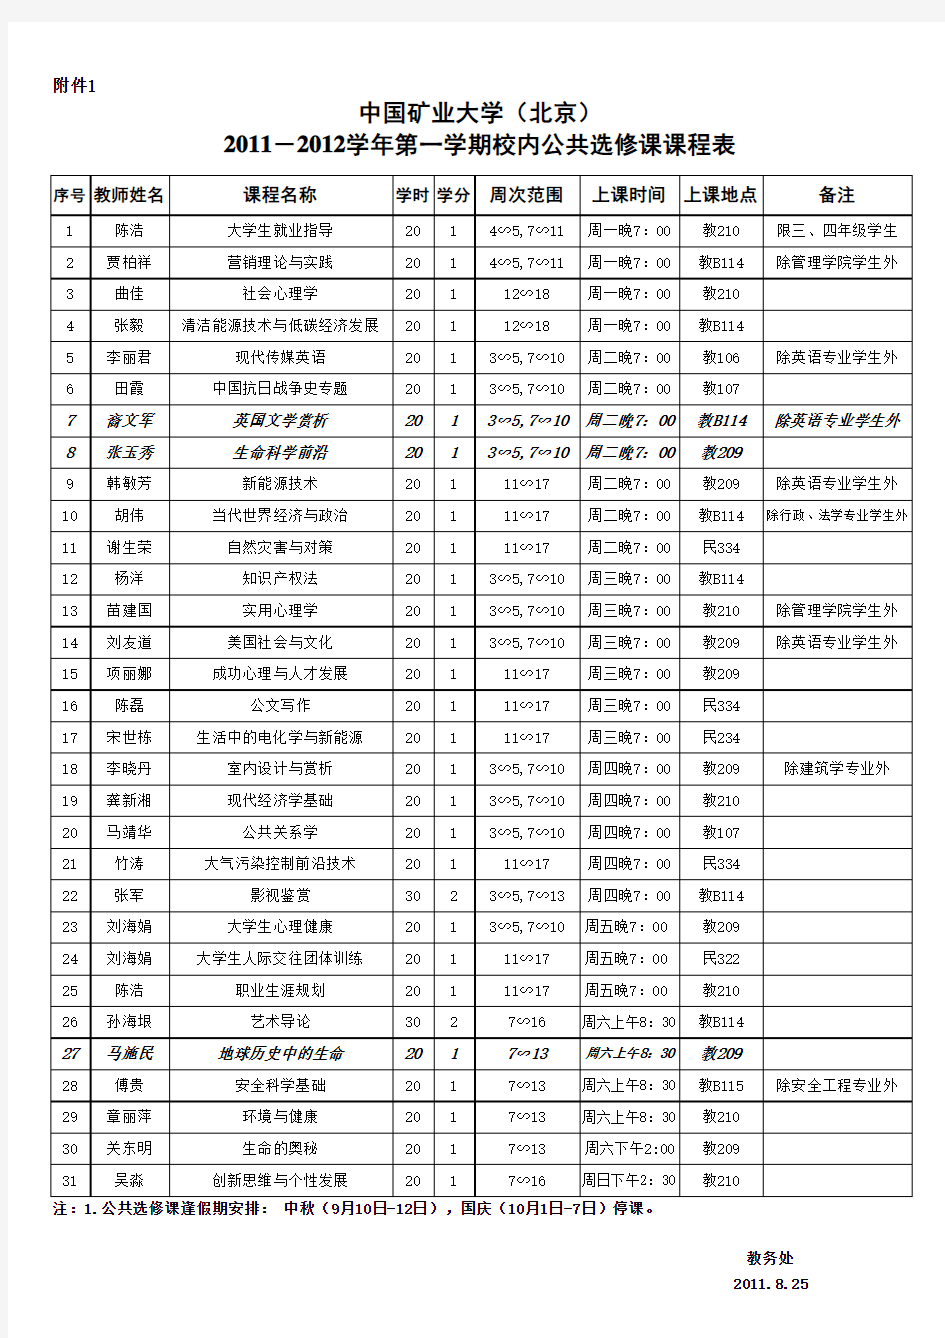 中国矿业大学(北京)选修课课程表